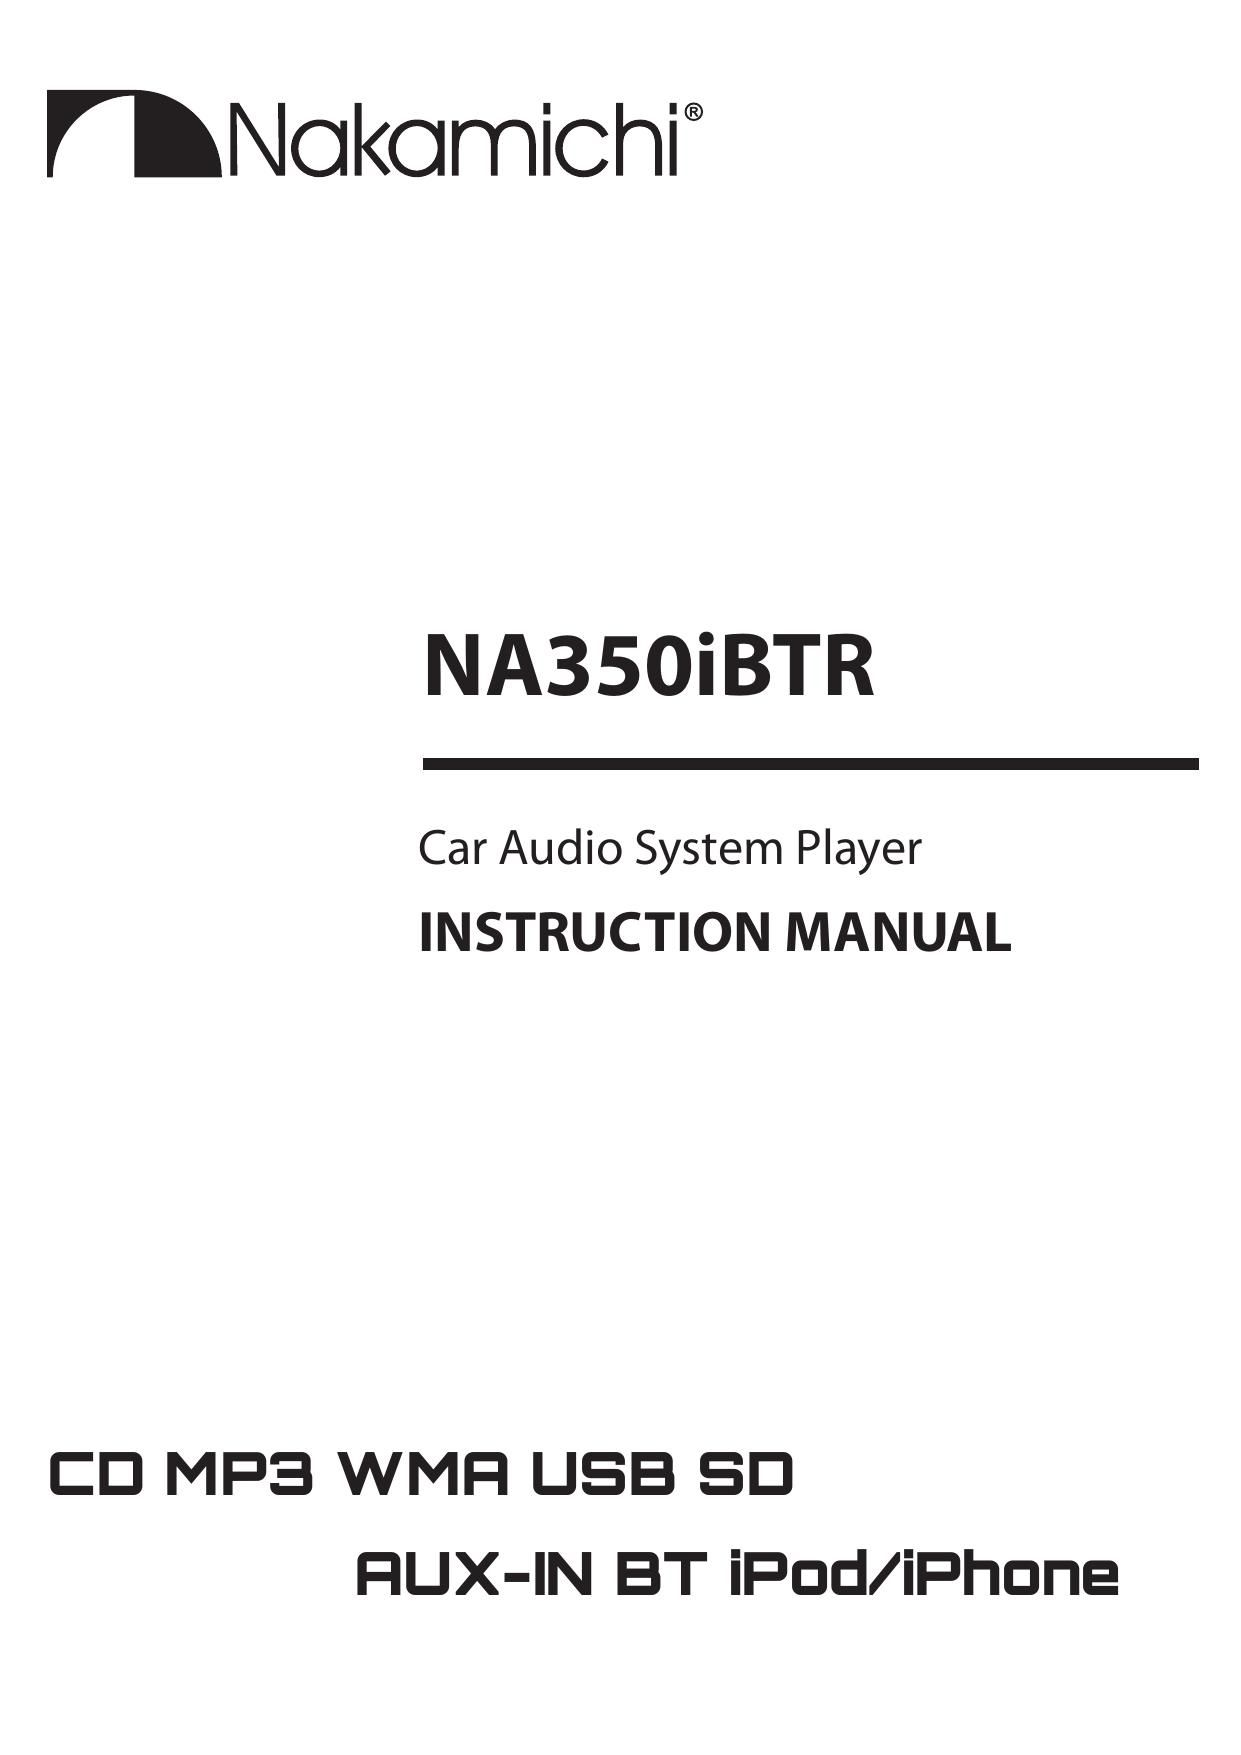 Nakamichi NA 350 IBTR Owners Manual